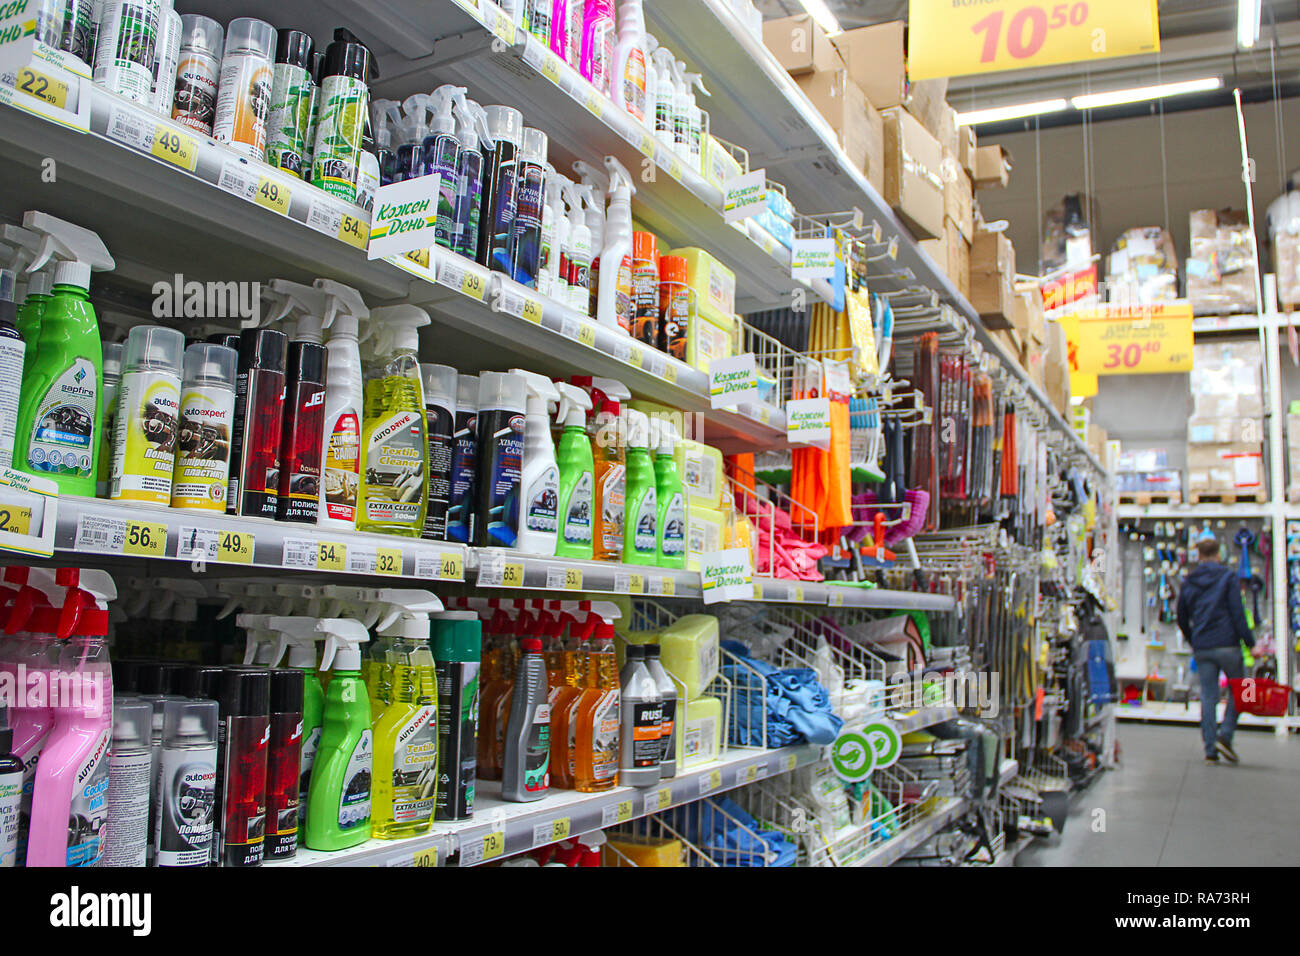 Detergents shop immagini e fotografie stock ad alta risoluzione - Alamy